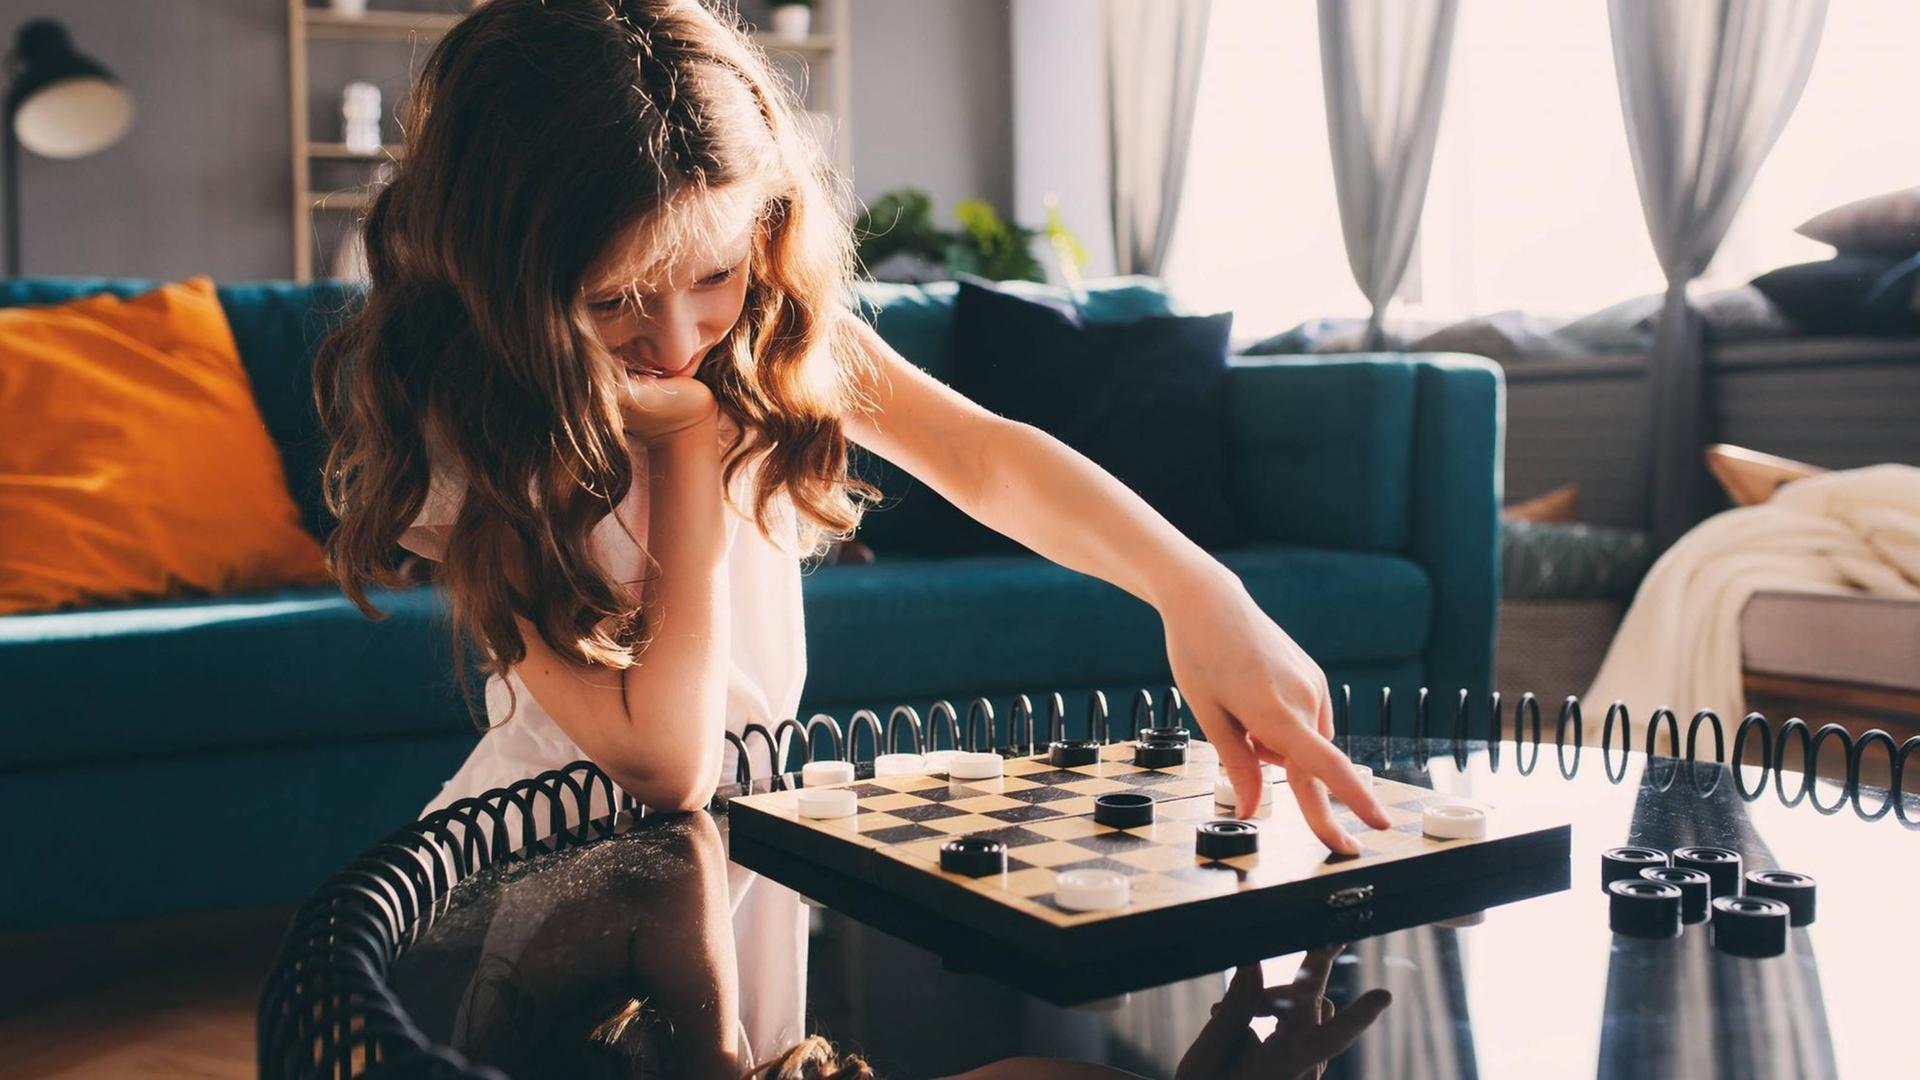 Ein Mädchen verschiebt mit der linken Hand einen Spielstein auf einem Brettspiel, ihr Kinn hat sie auf die rechte Hand gestützt.